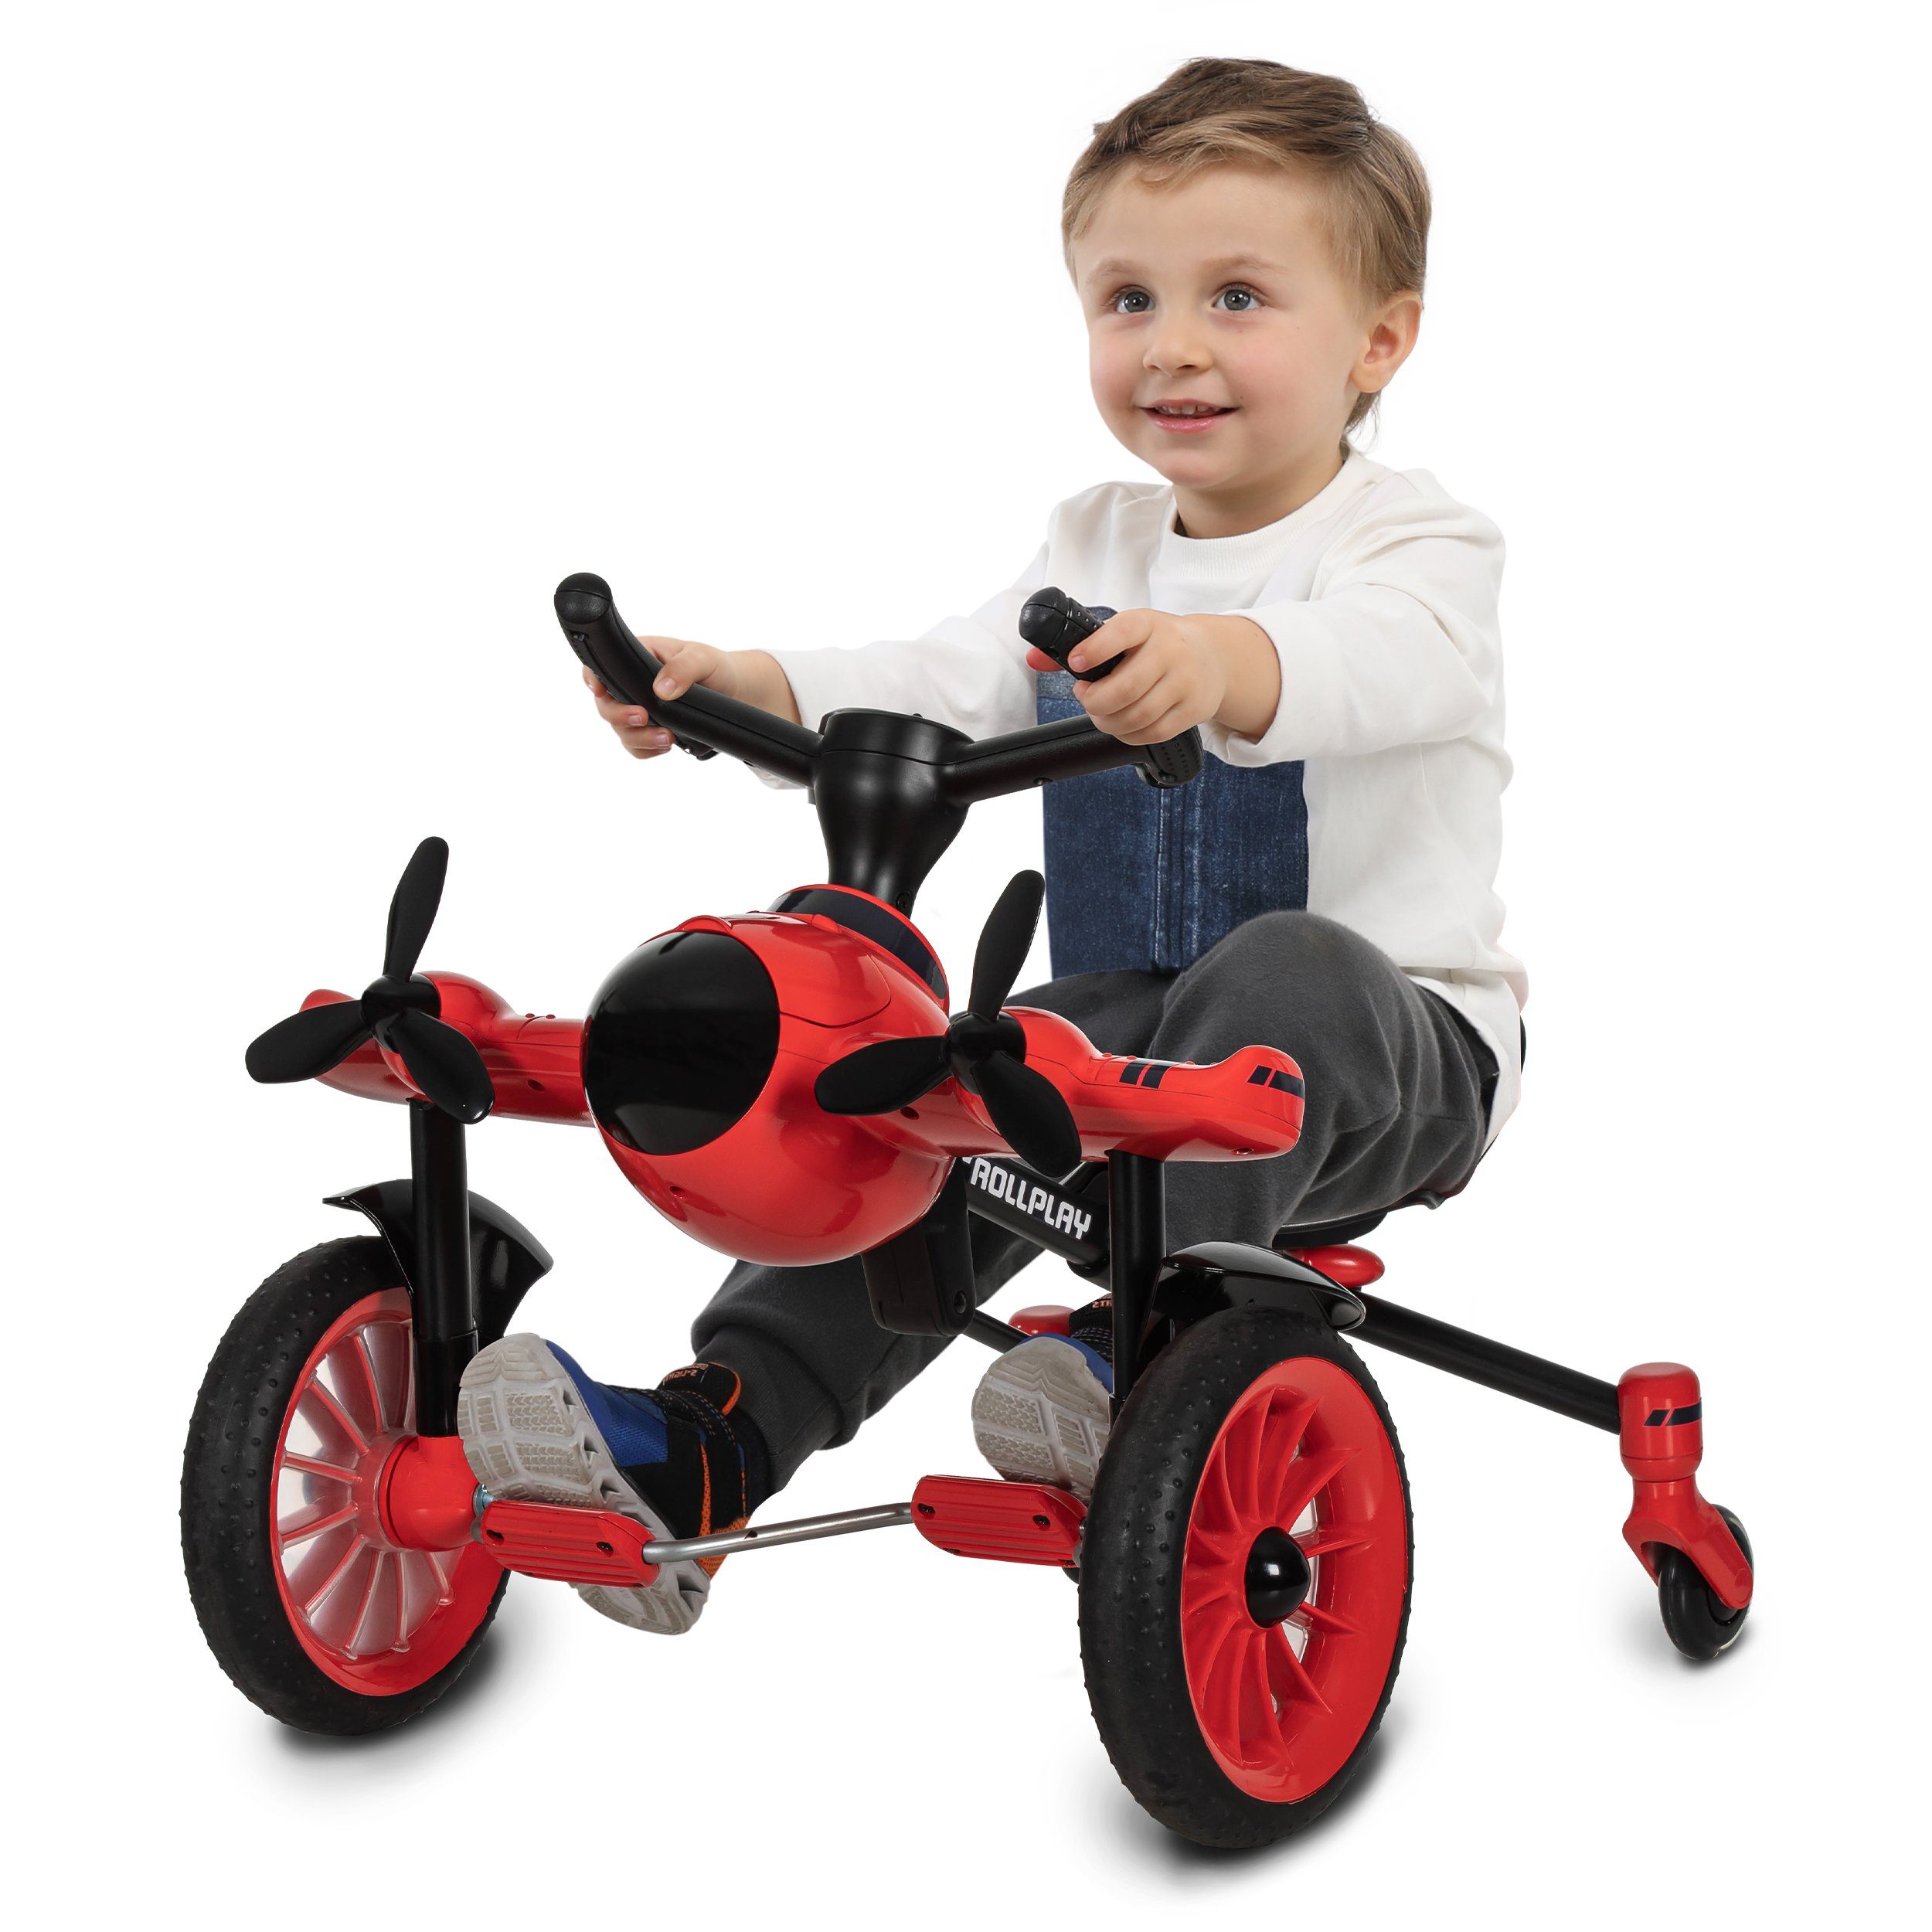 Kinderfahrzeug Tretfahrzeug / ROLLPLAY Flex Rollplay Drifter Pedal Tretfahrzeug